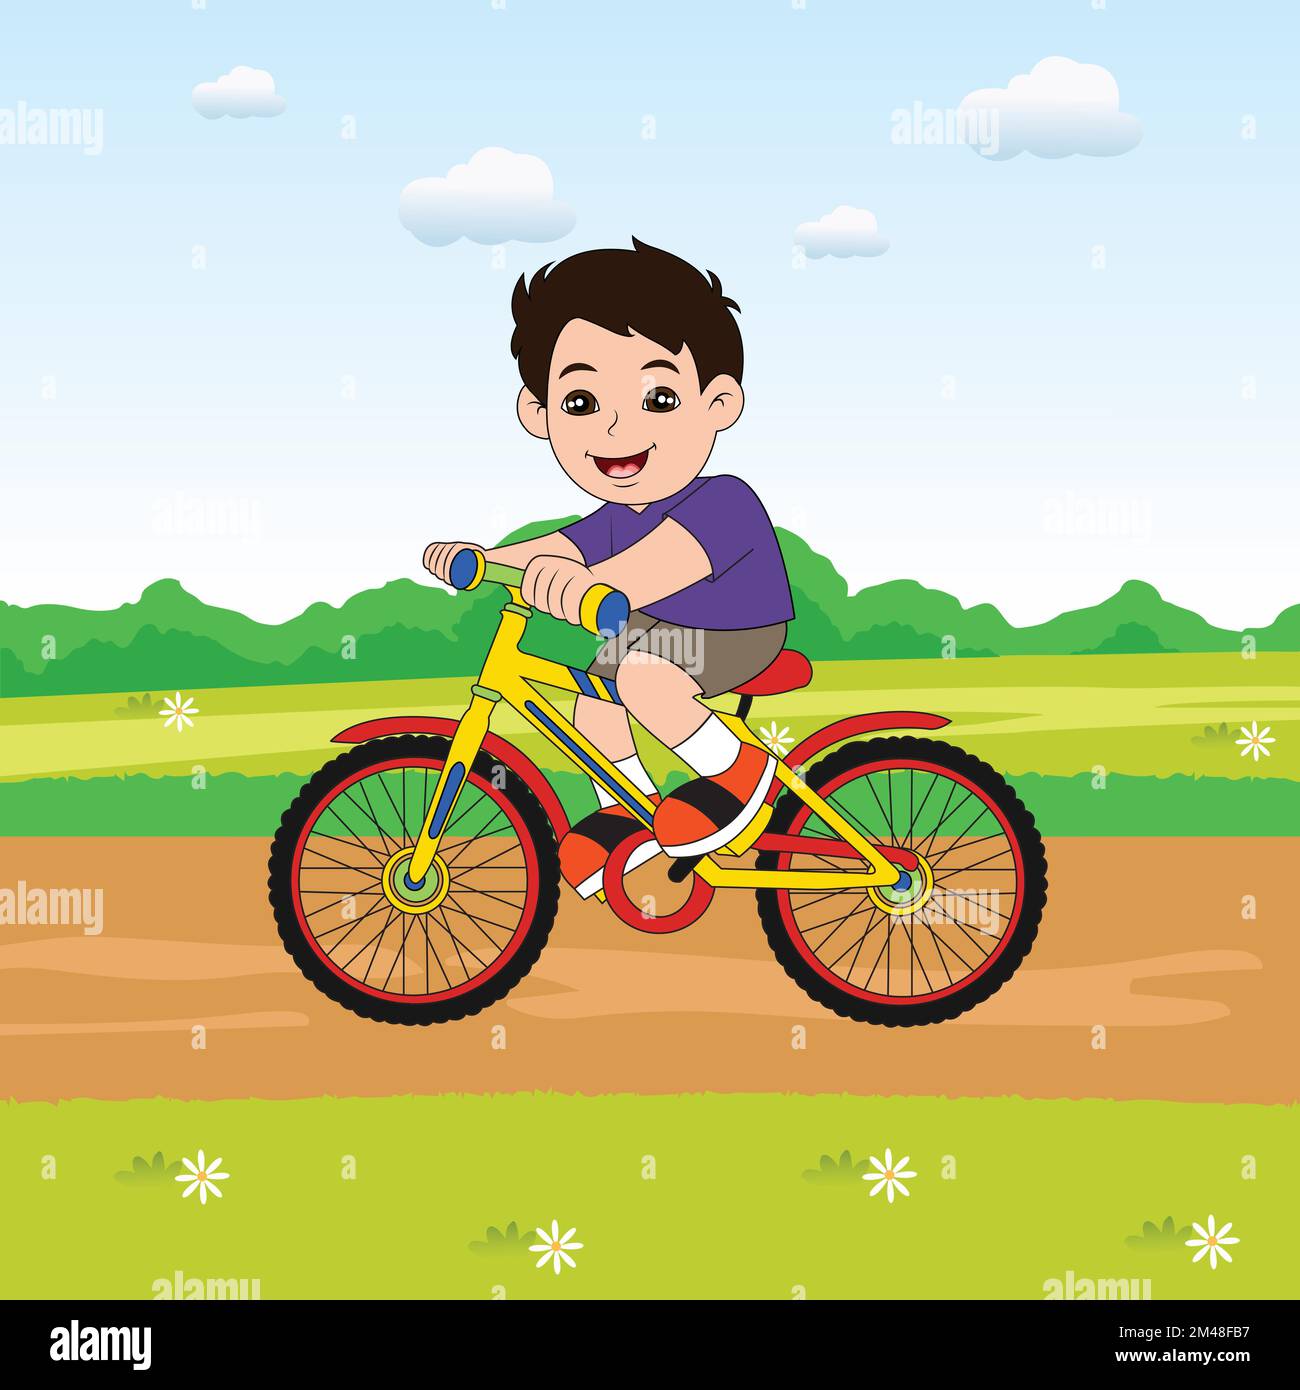 Junge, der fahrrad fährt Stock-Vektorgrafiken kaufen - Alamy